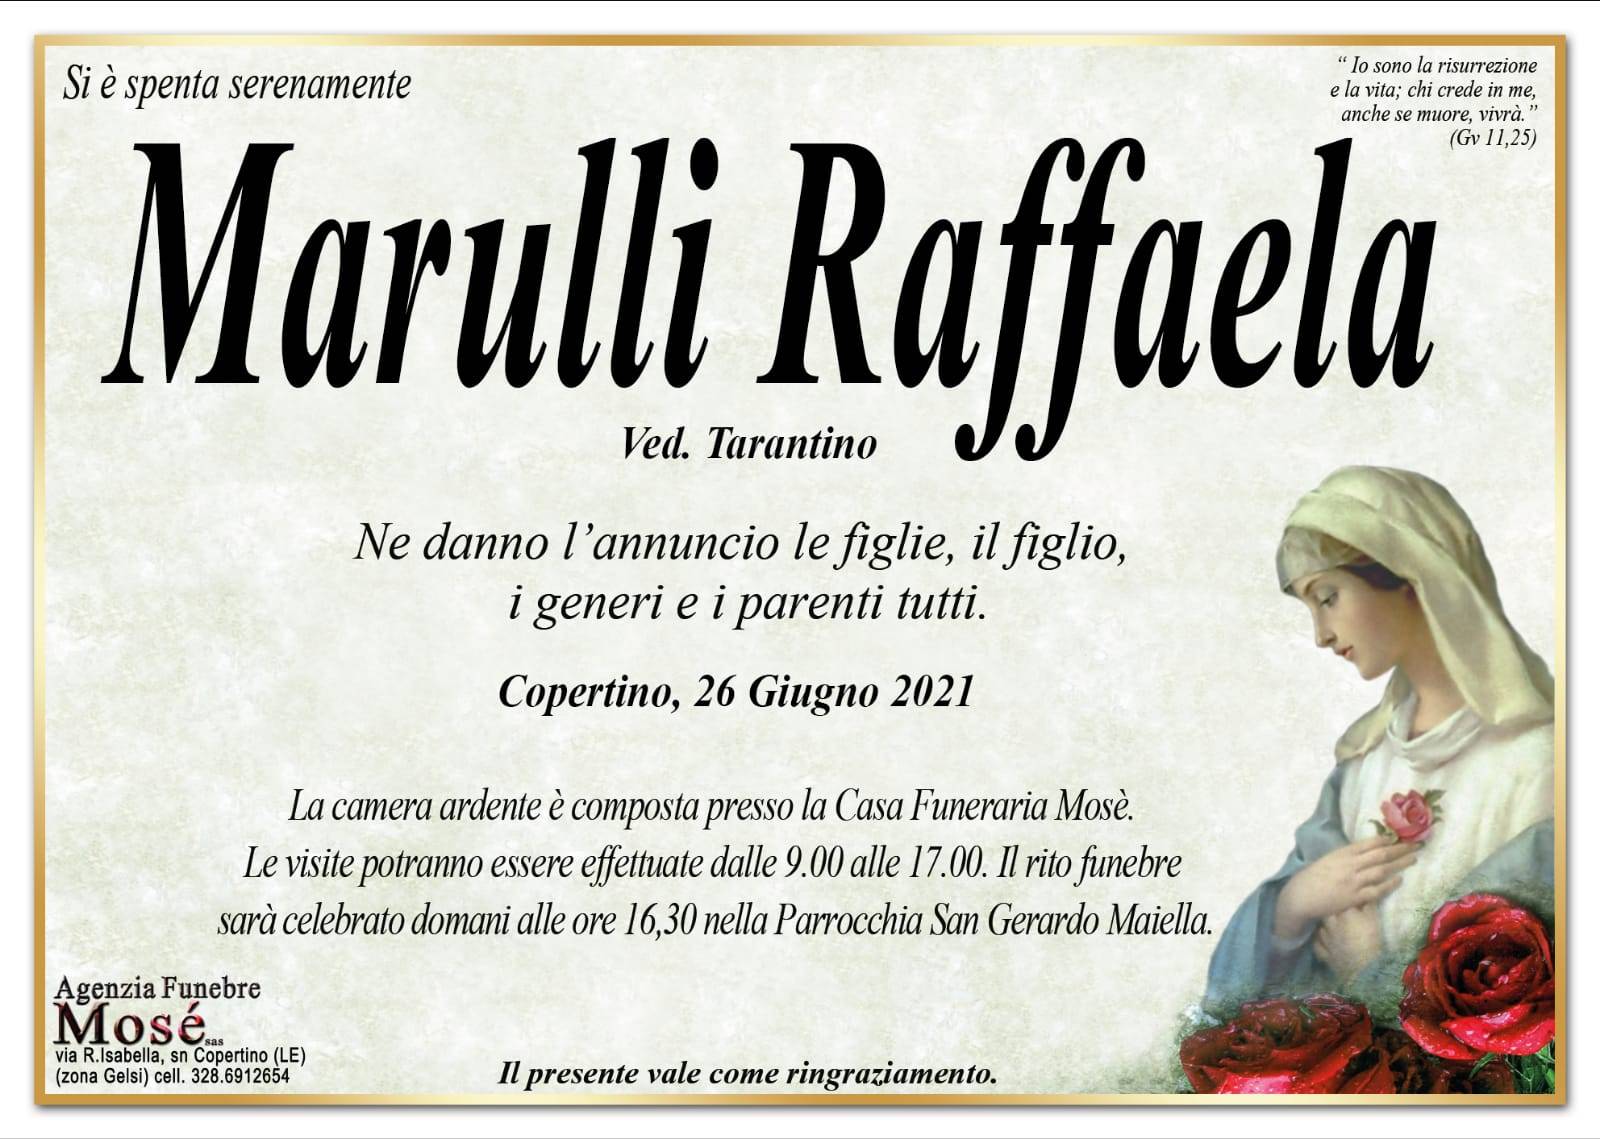 Raffaela Marulli